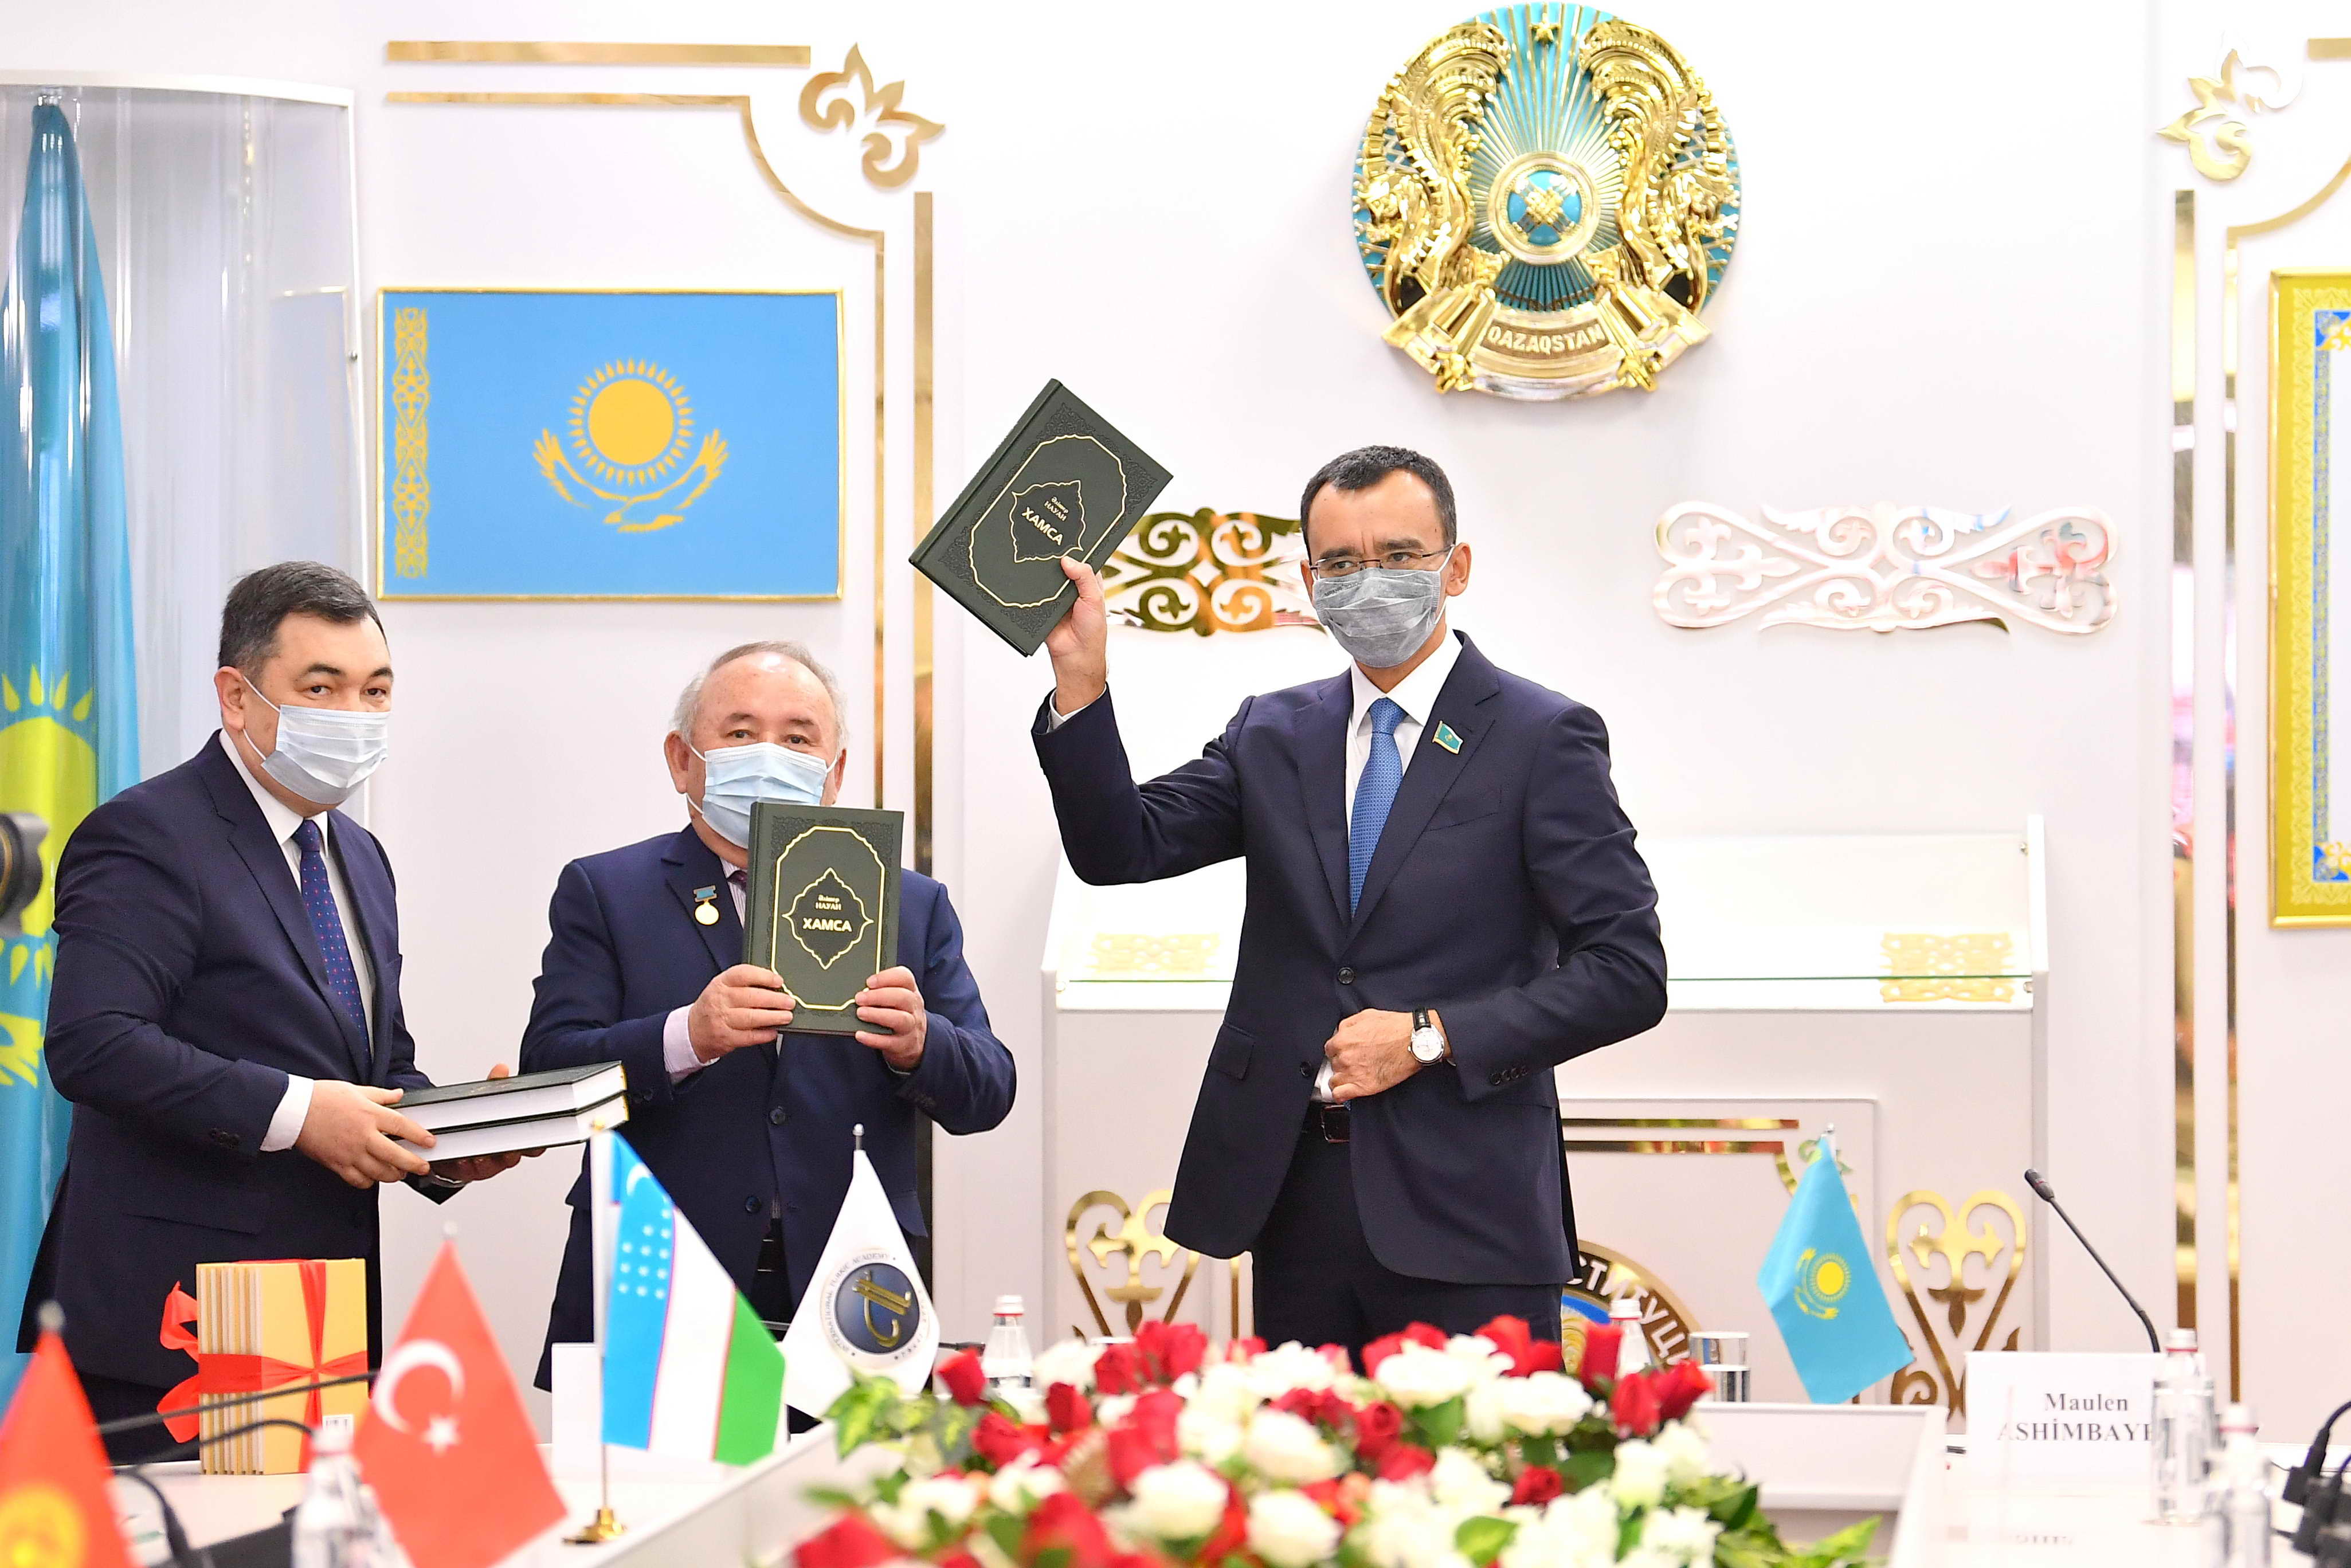 Әлішер Науаидің "Хамса" атты кітабы қазақ тілінде жарық көрді